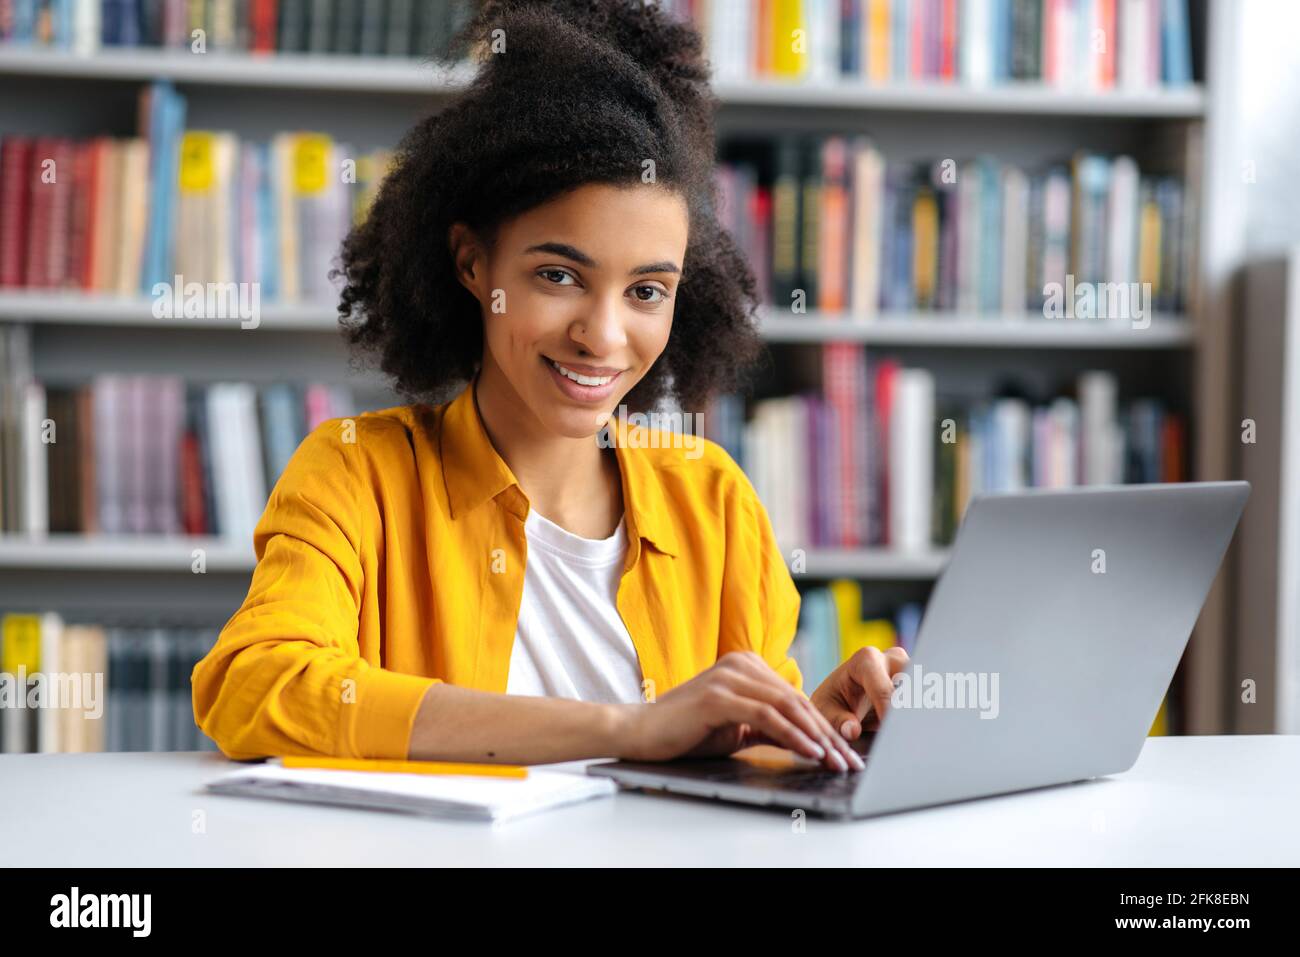 Hübsches junges afroamerikanisches Teenager-Mädchen, trendig gekleidet, Studentin, die in der Universitätsbibliothek am Laptop sitzt, sich auf die Prüfung vorbereist, Informationen sucht, die Kamera anschaut und lächelt Stockfoto